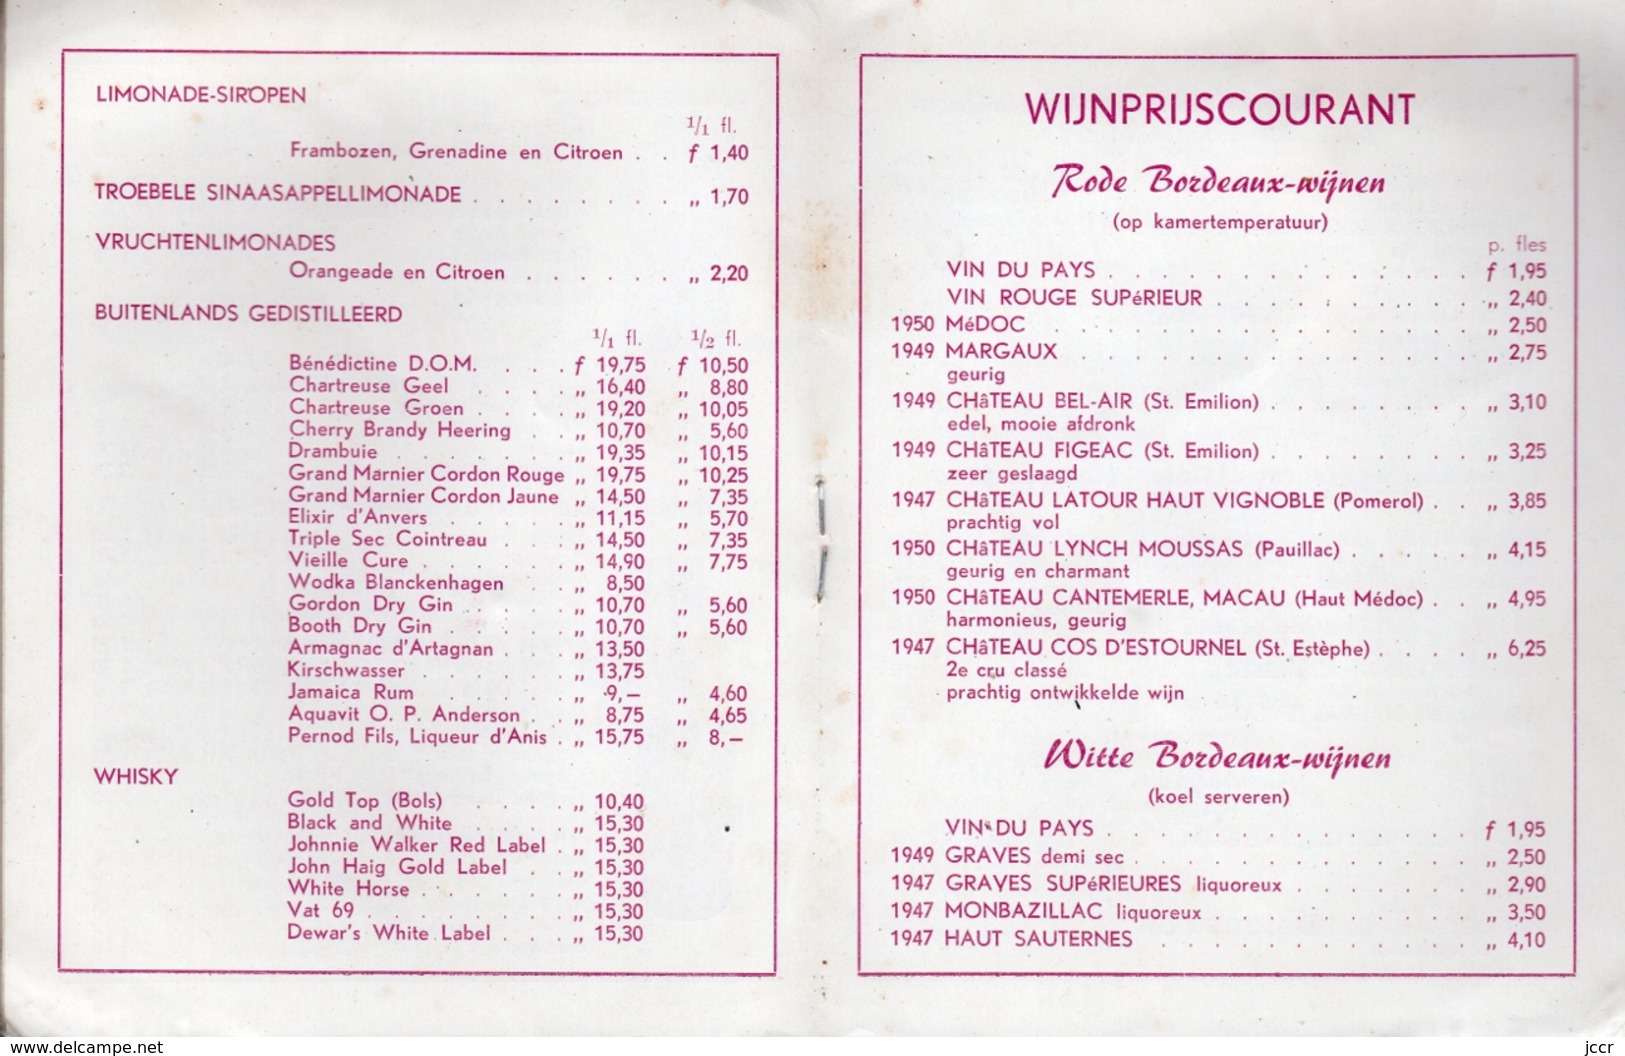 Slijterij H. C. Wyers & Co. Vriesestraat 32 - Dordrecht (Pays-Bas) - Prijscourant Vor Particulieren - December 1955 - Cooking & Wines